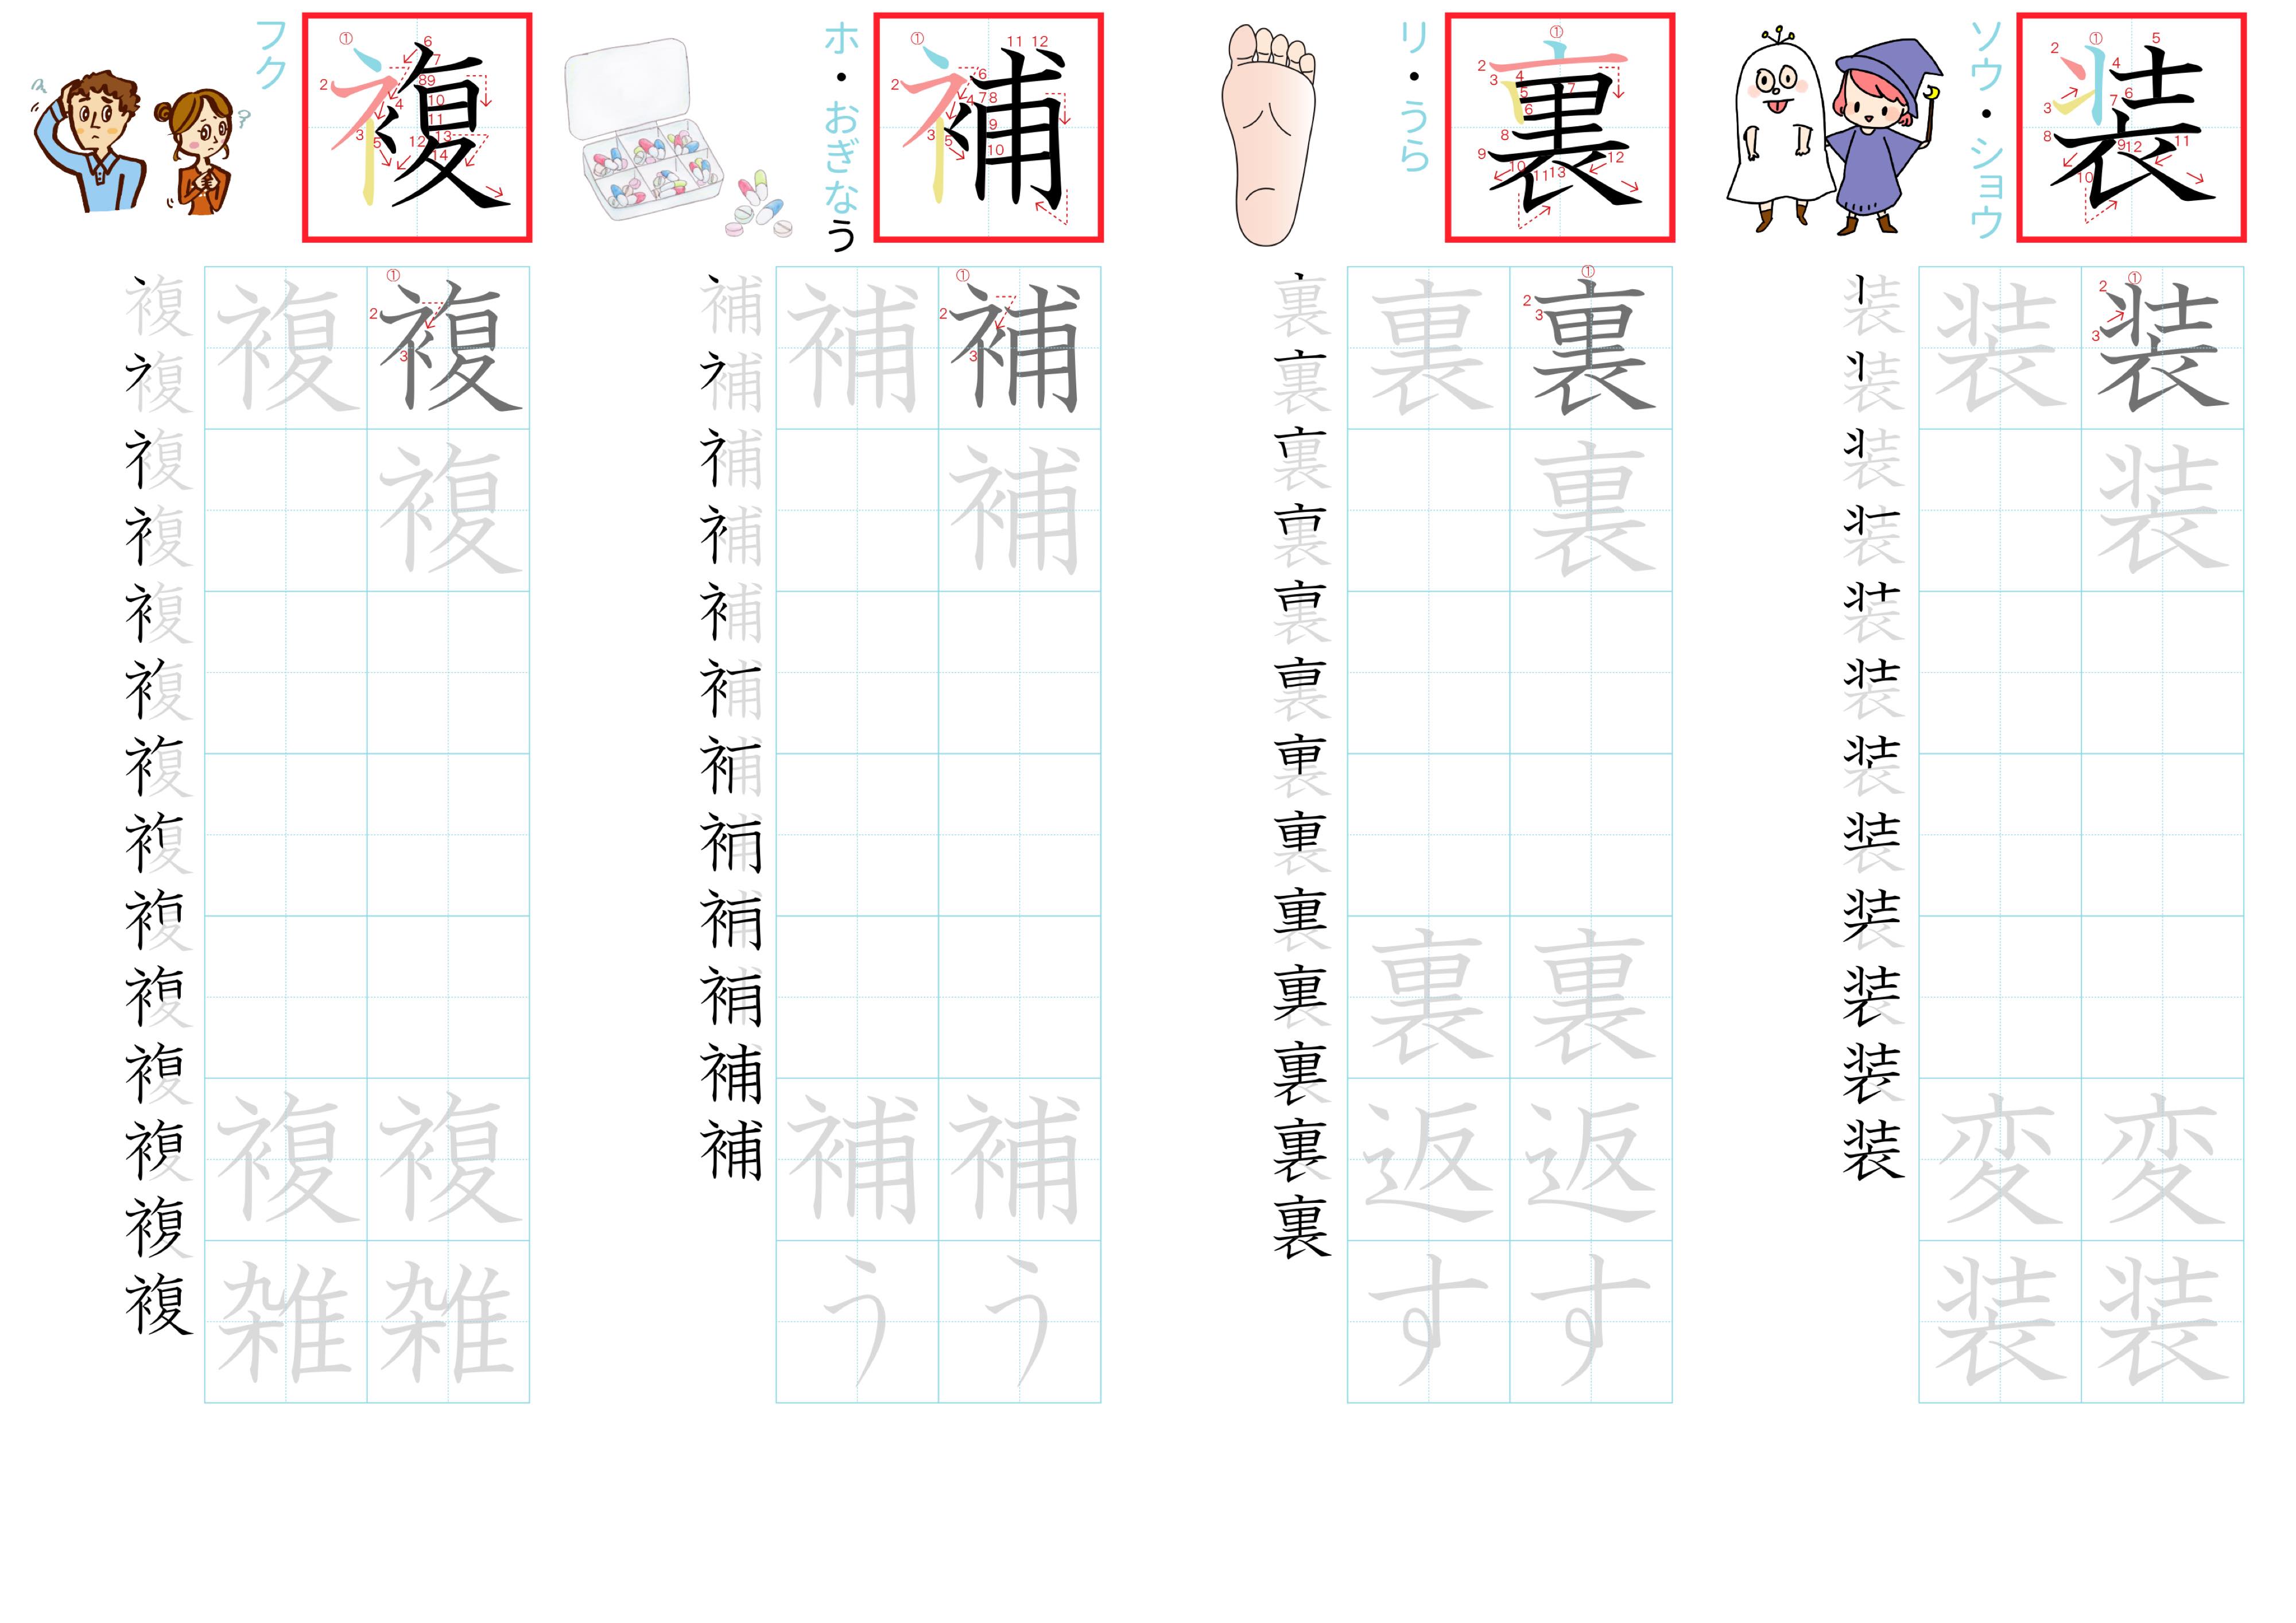 kanji-practice-card-n2-japanese-230